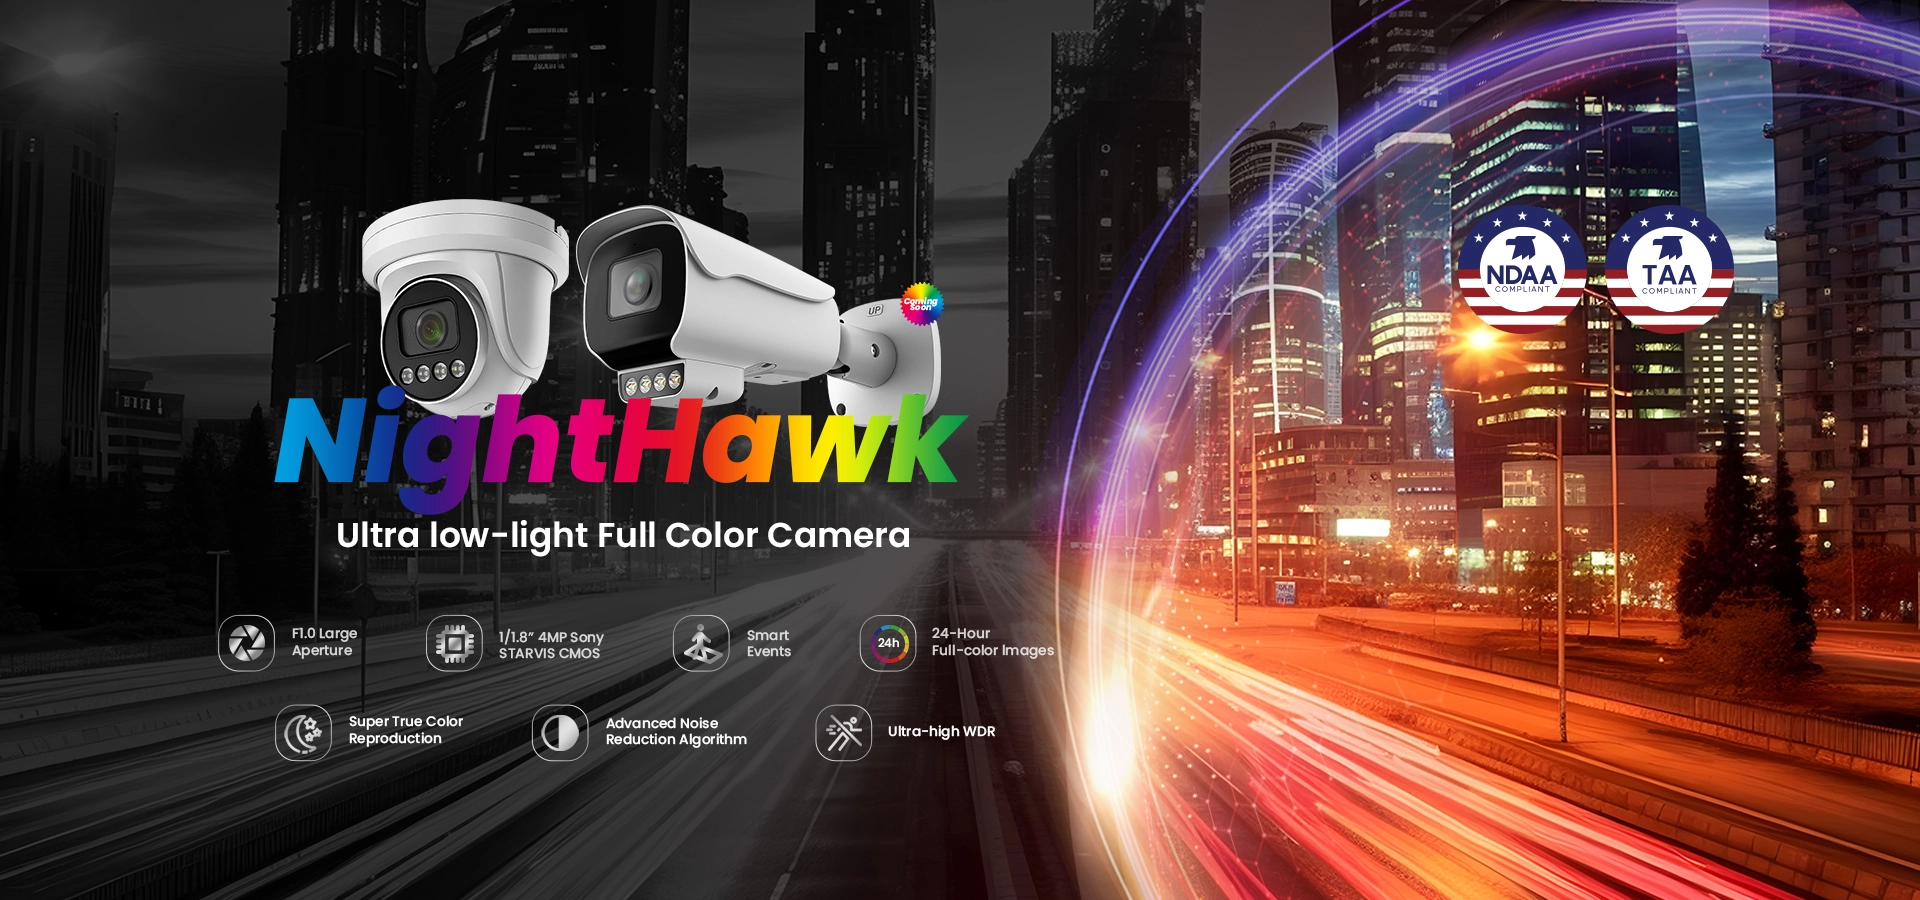 Sunell Nighthawk Ultra-Low-Light Intelligent Full-Color bullet Camera--จับภาพที่คมชัดในสภาพแวดล้อมที่มีแสงน้อยเป็นพิเศษทั้งหมดนี้ไม่จำเป็นต้องให้แสงเสริมเบลอการเคลื่อนไหวน้อยที่สุด